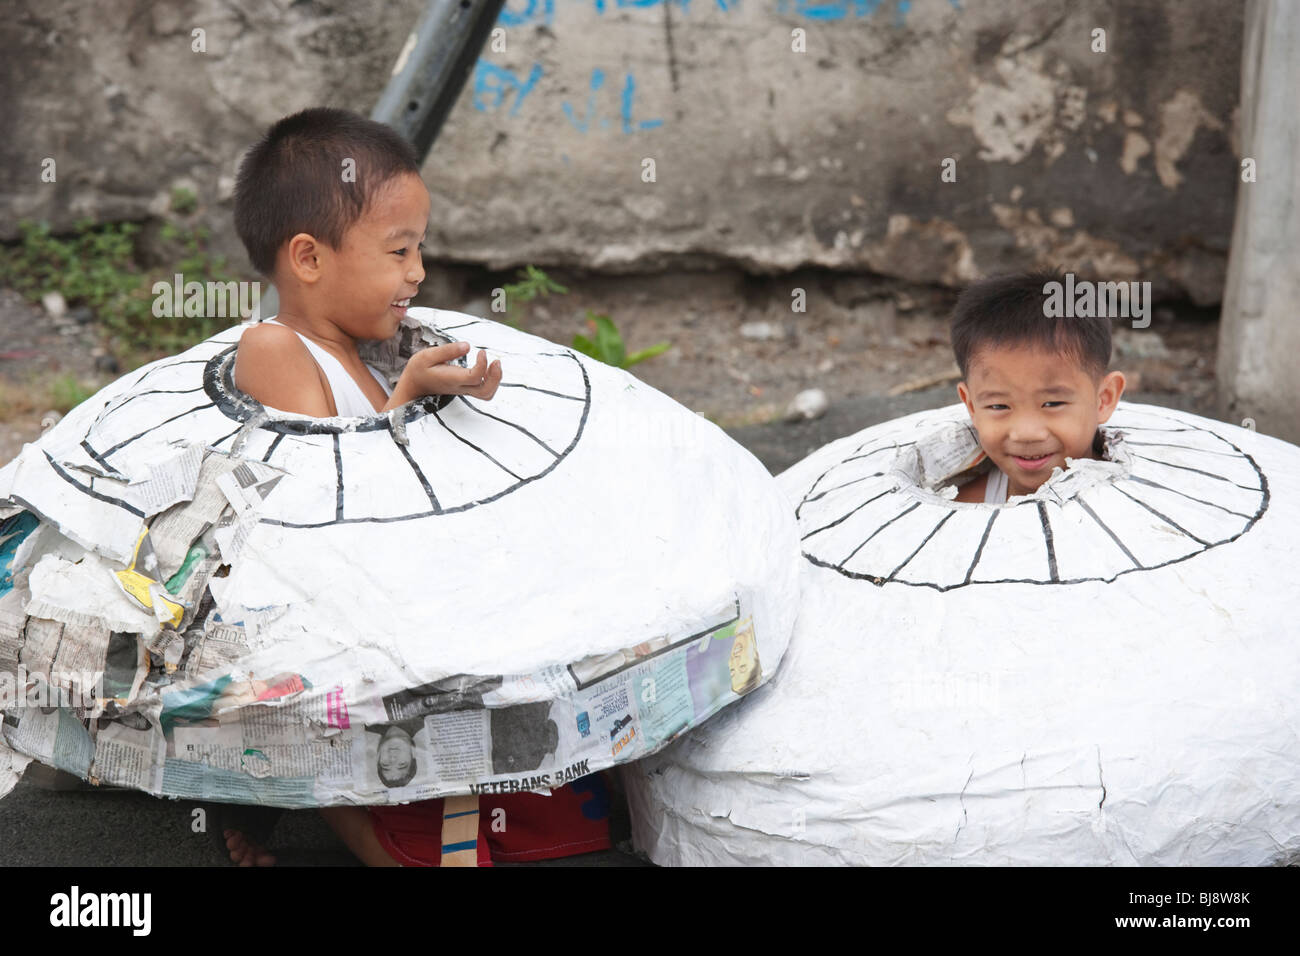 Deux enfants de la rue jouant, de Manille, Philippines Banque D'Images